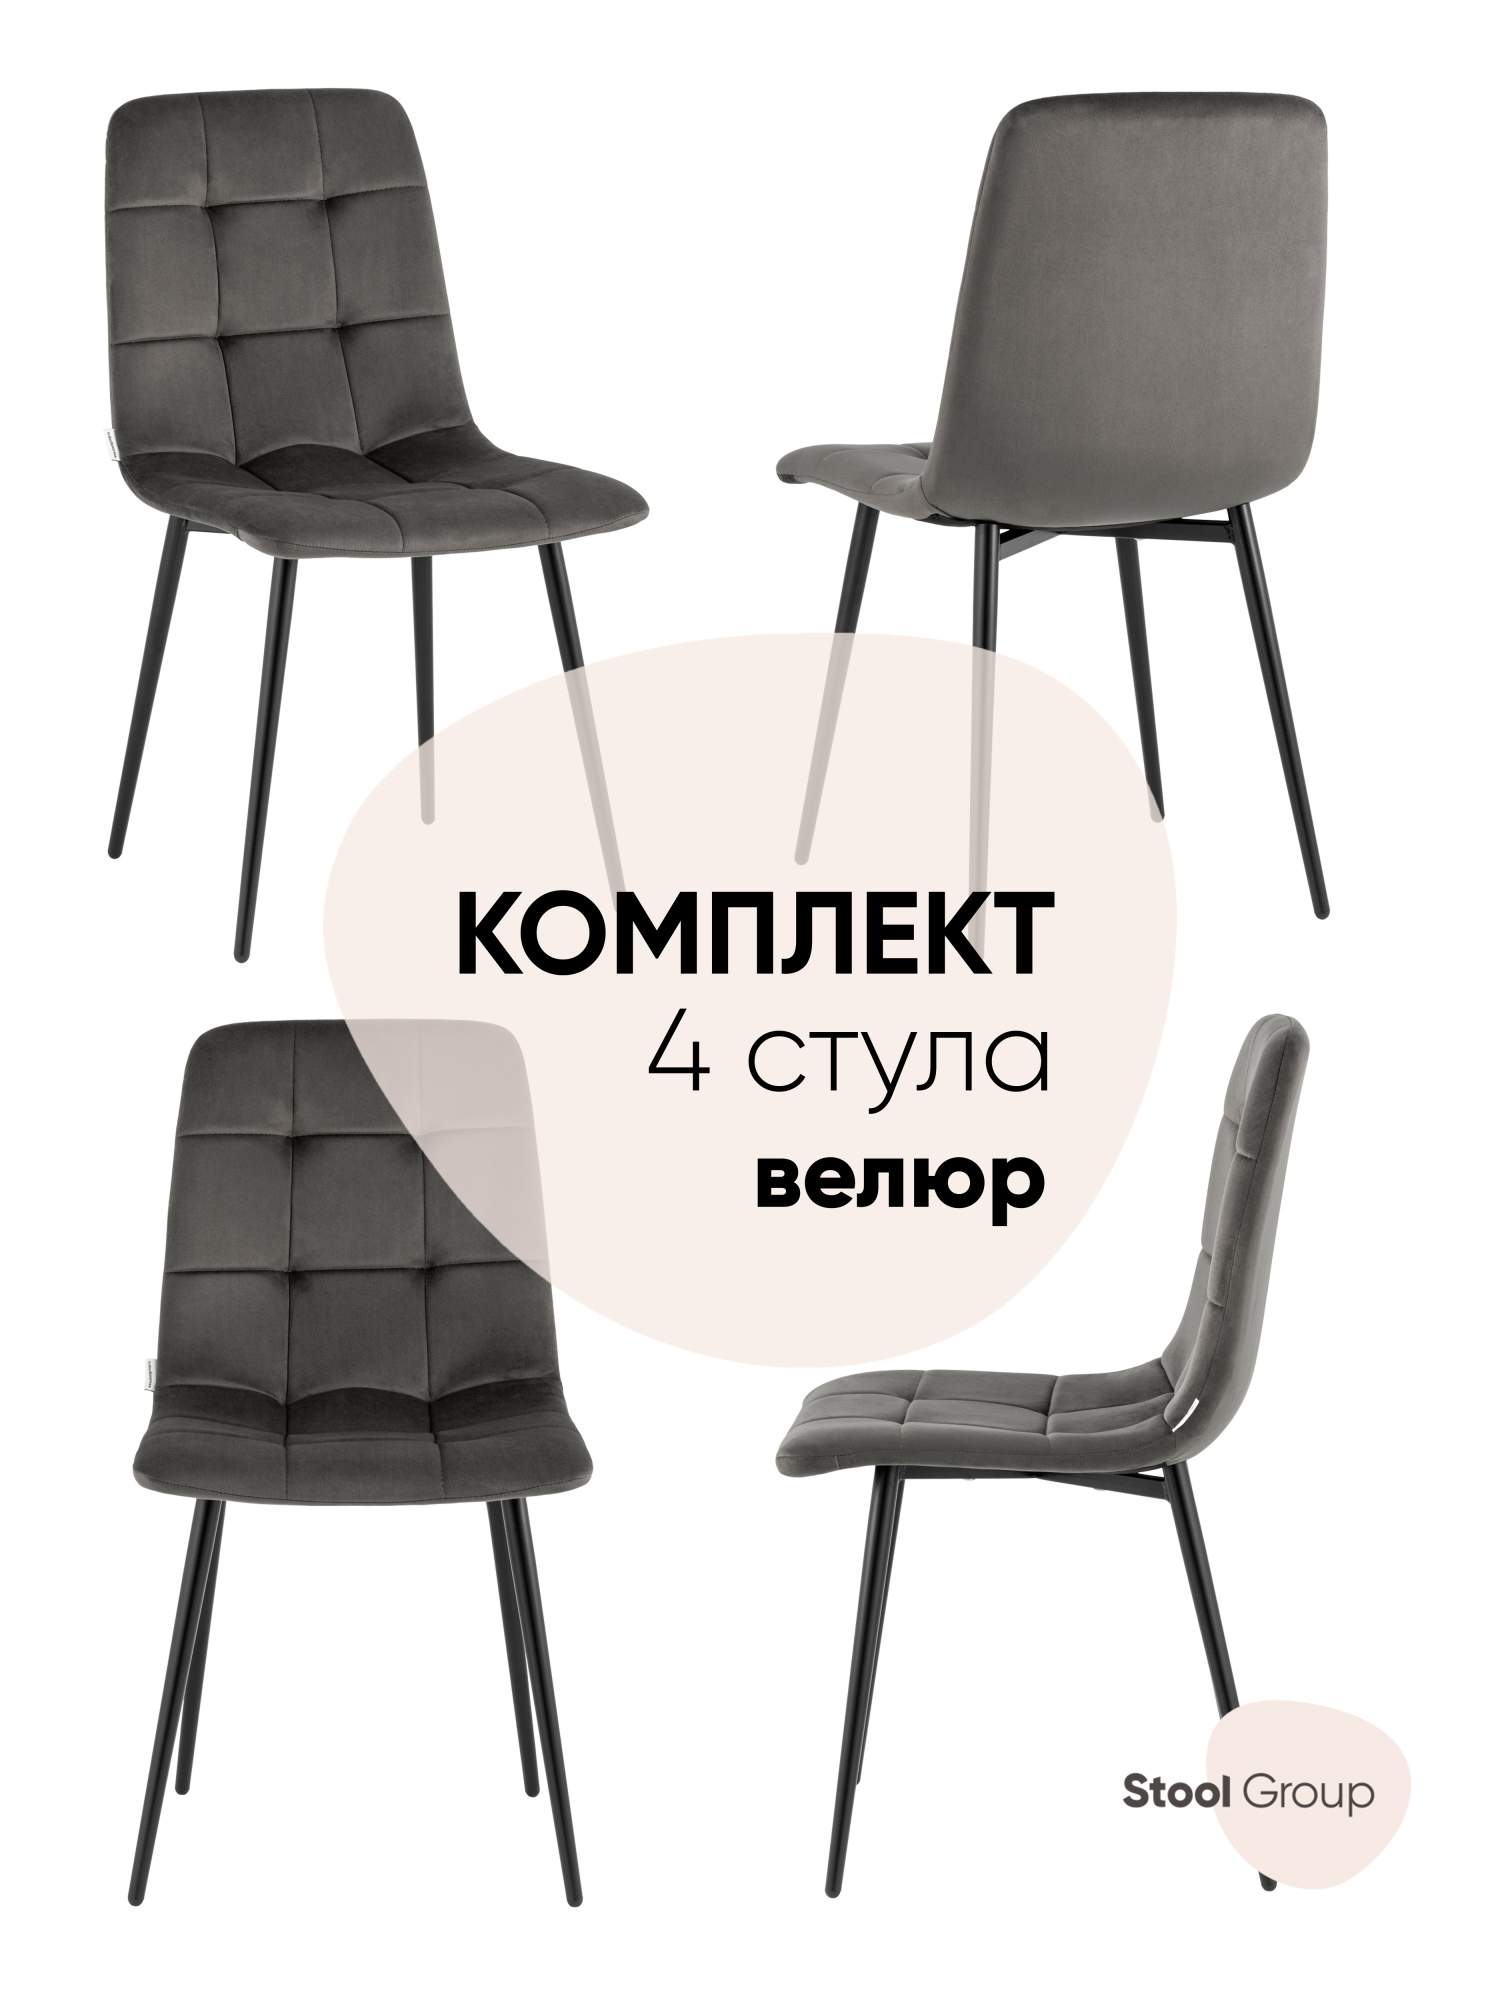 Стул для кухни обеденный Одди велюр тёмно-серый (комплект 4 стула) – купить в Москве, цены в интернет-магазинах на Мегамаркет